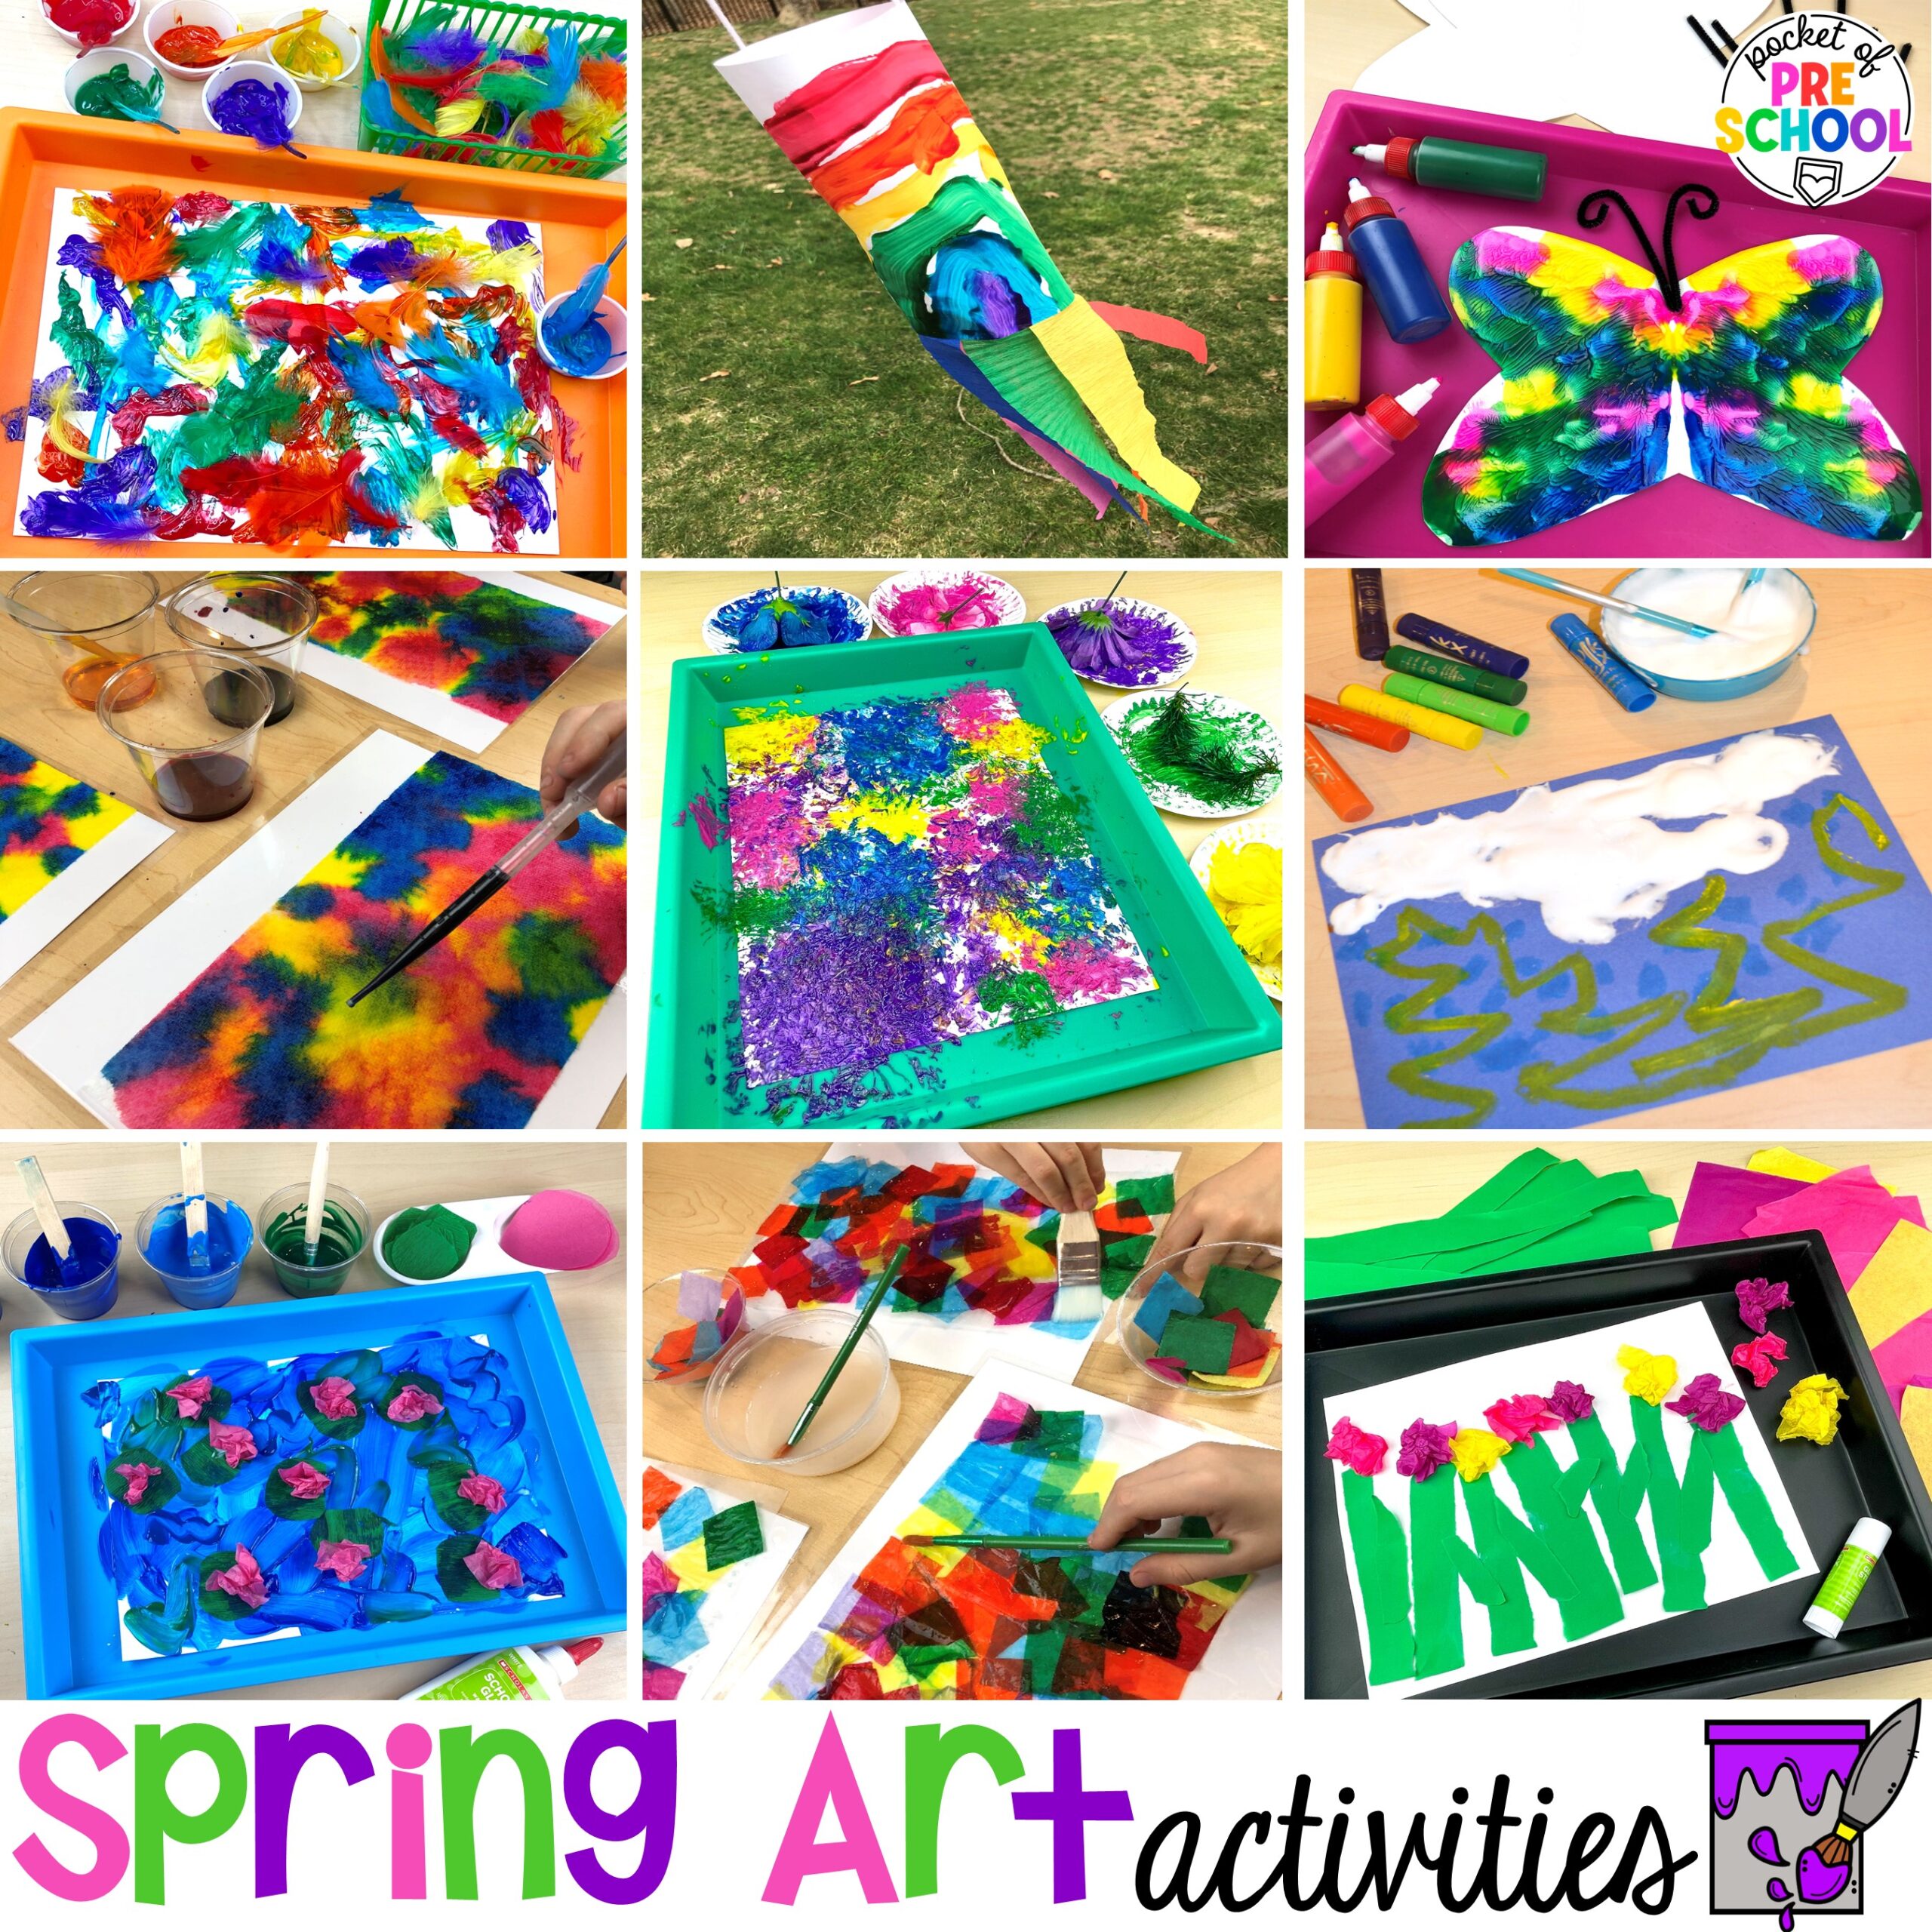 Spring art activities to brighten your preschool, pre-k, and kindergarten rooms.